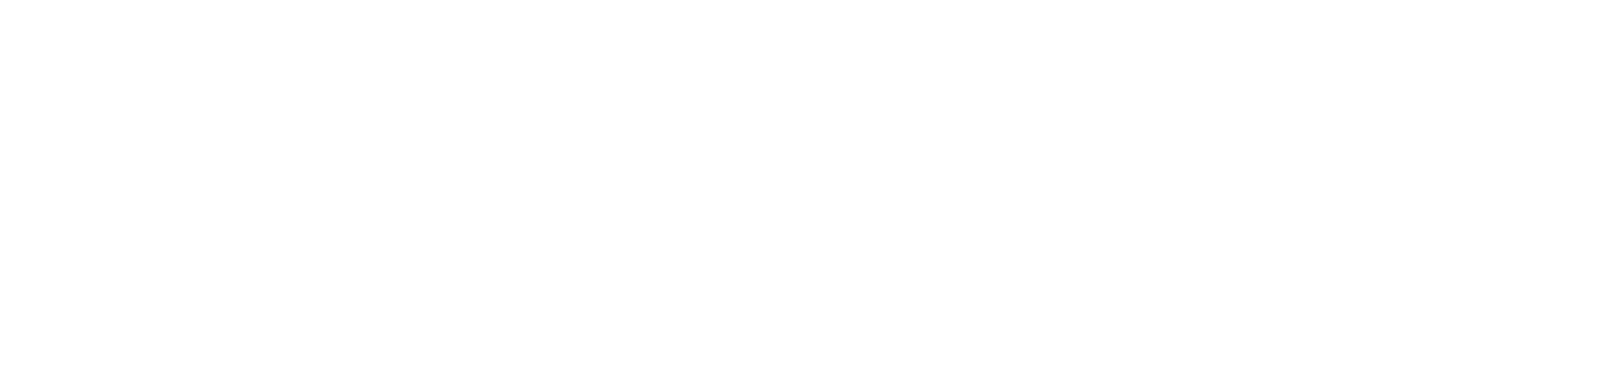 Qorvo
 logo large for dark backgrounds (transparent PNG)